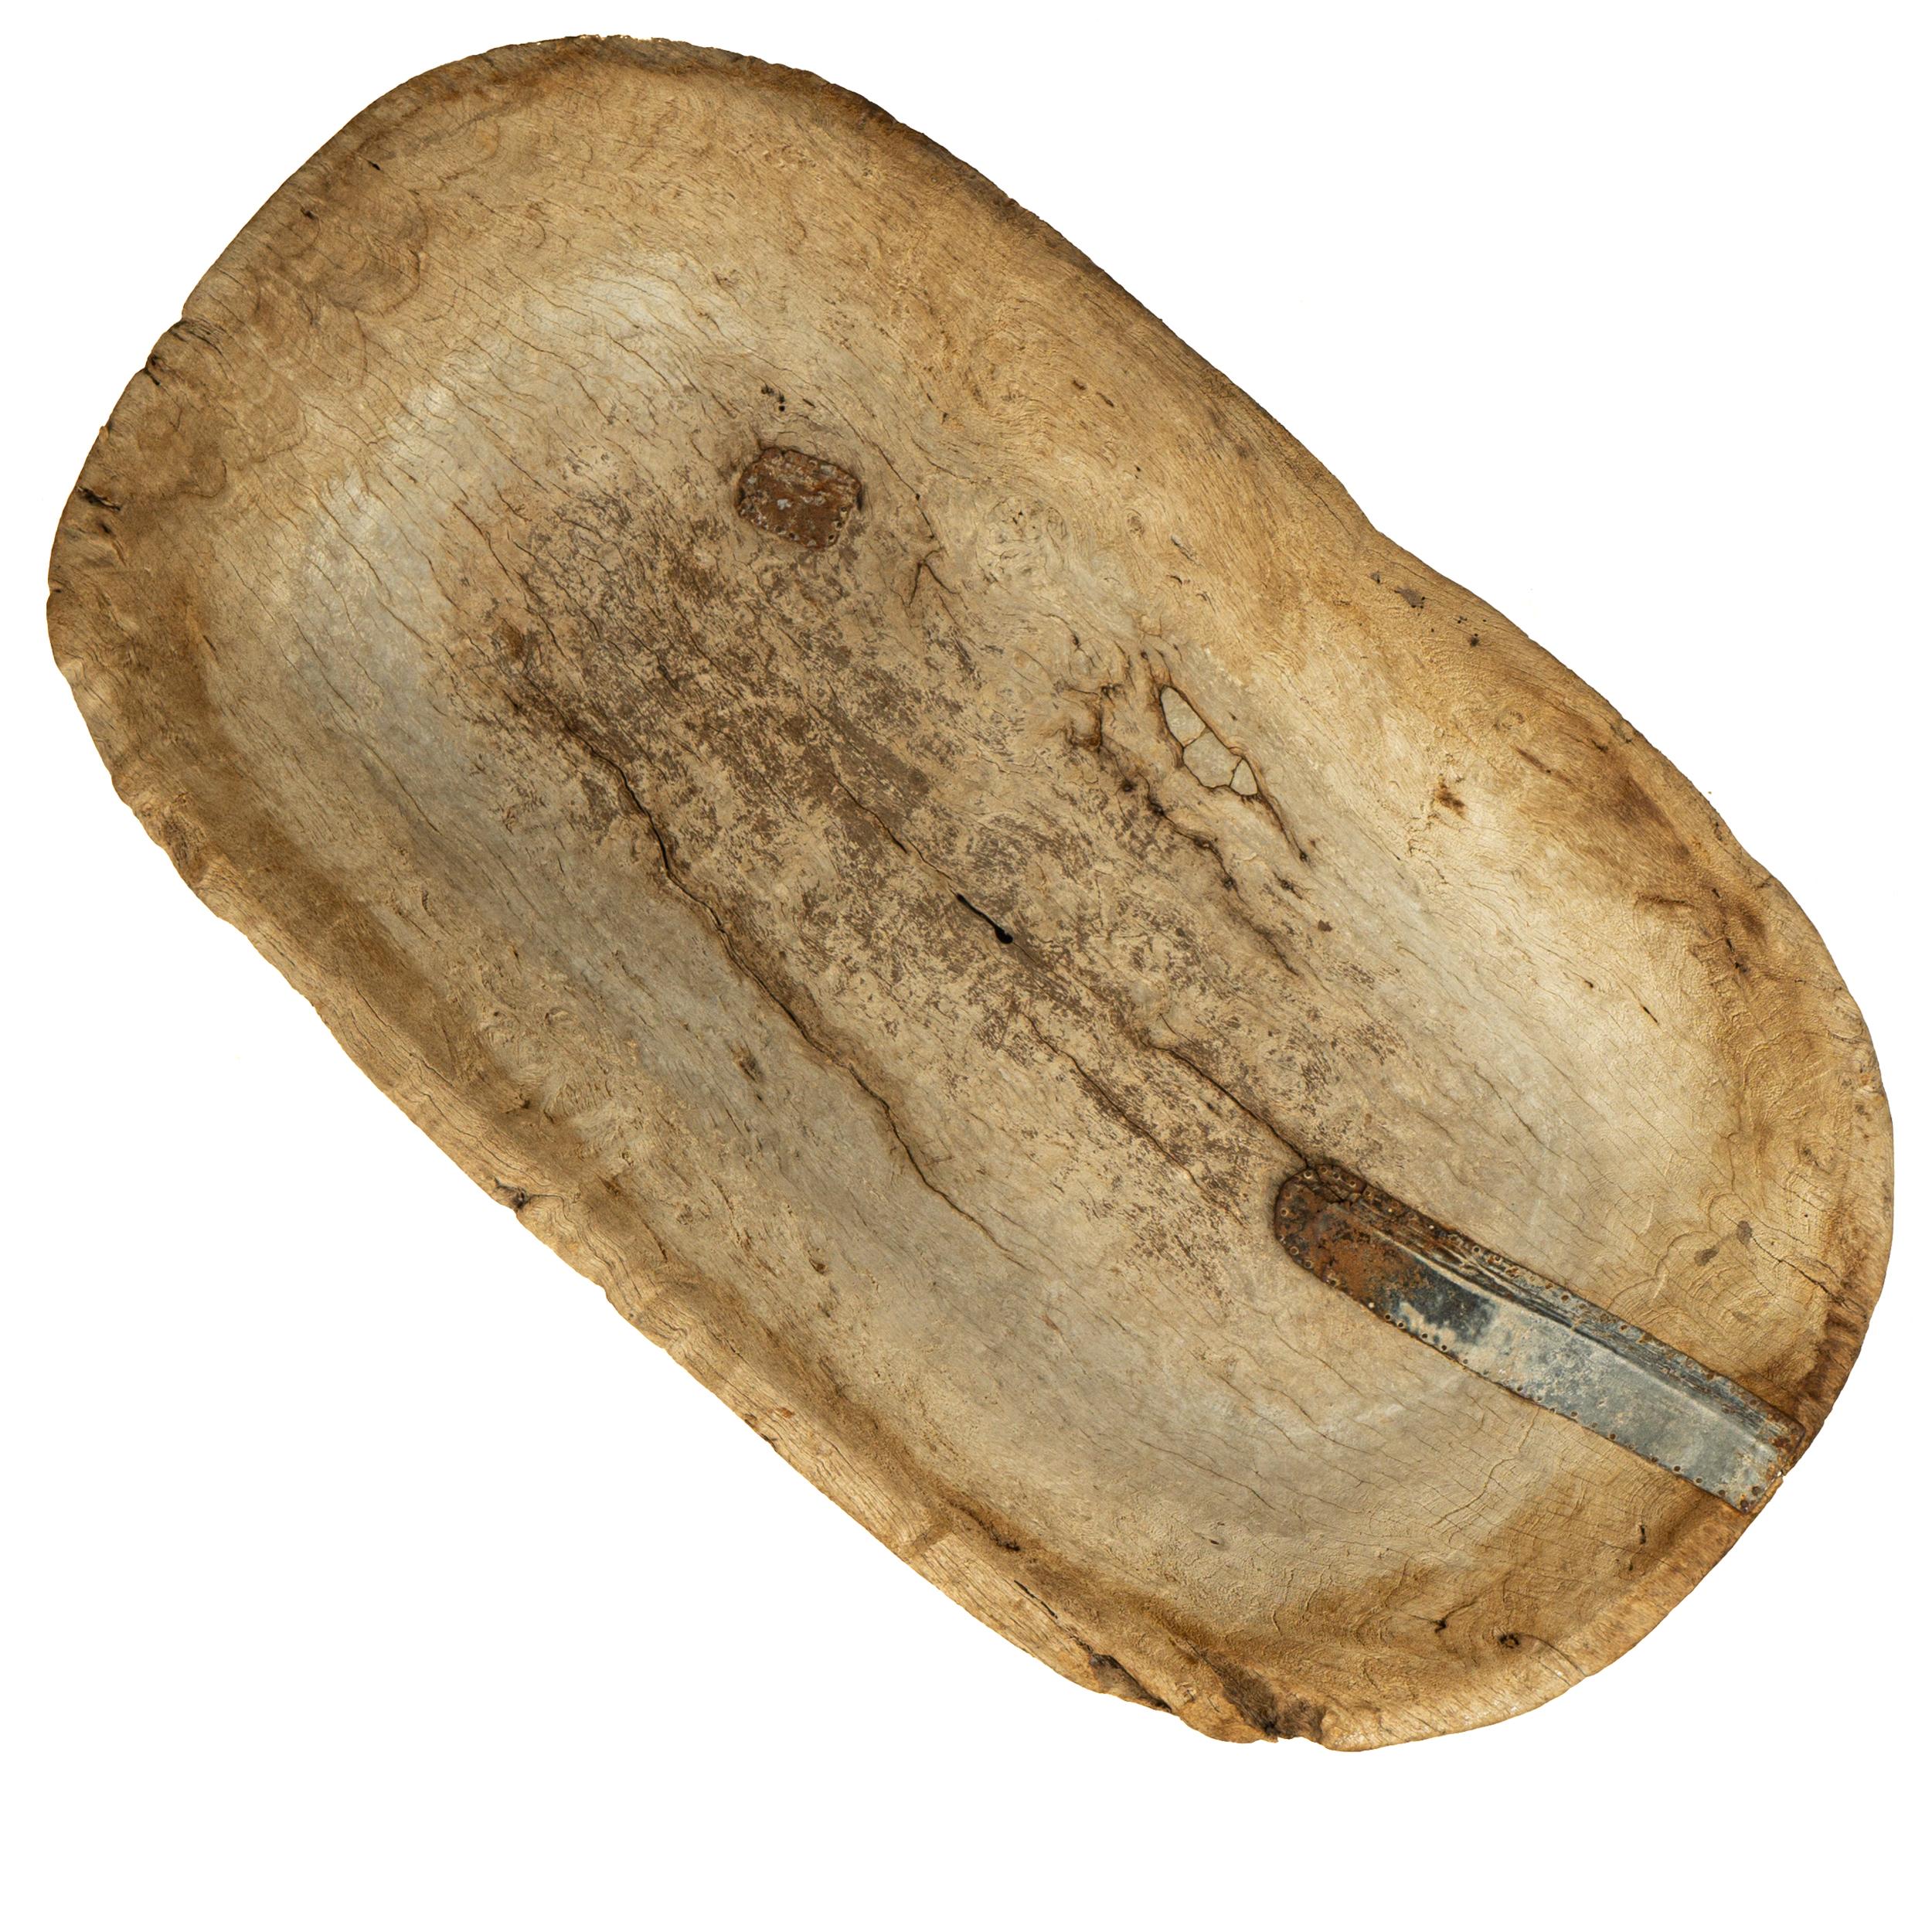 Bemerkenswerte Teigschale aus Mesquite-Holz, gefunden in Westmexiko, Mitte des 19. Jahrhunderts, aus einem einzigen Holzblock geschnitzt. 

Es ist selten, dass man diese Schalen in einem so guten Zustand findet, vor allem in dieser Größe. Dieses